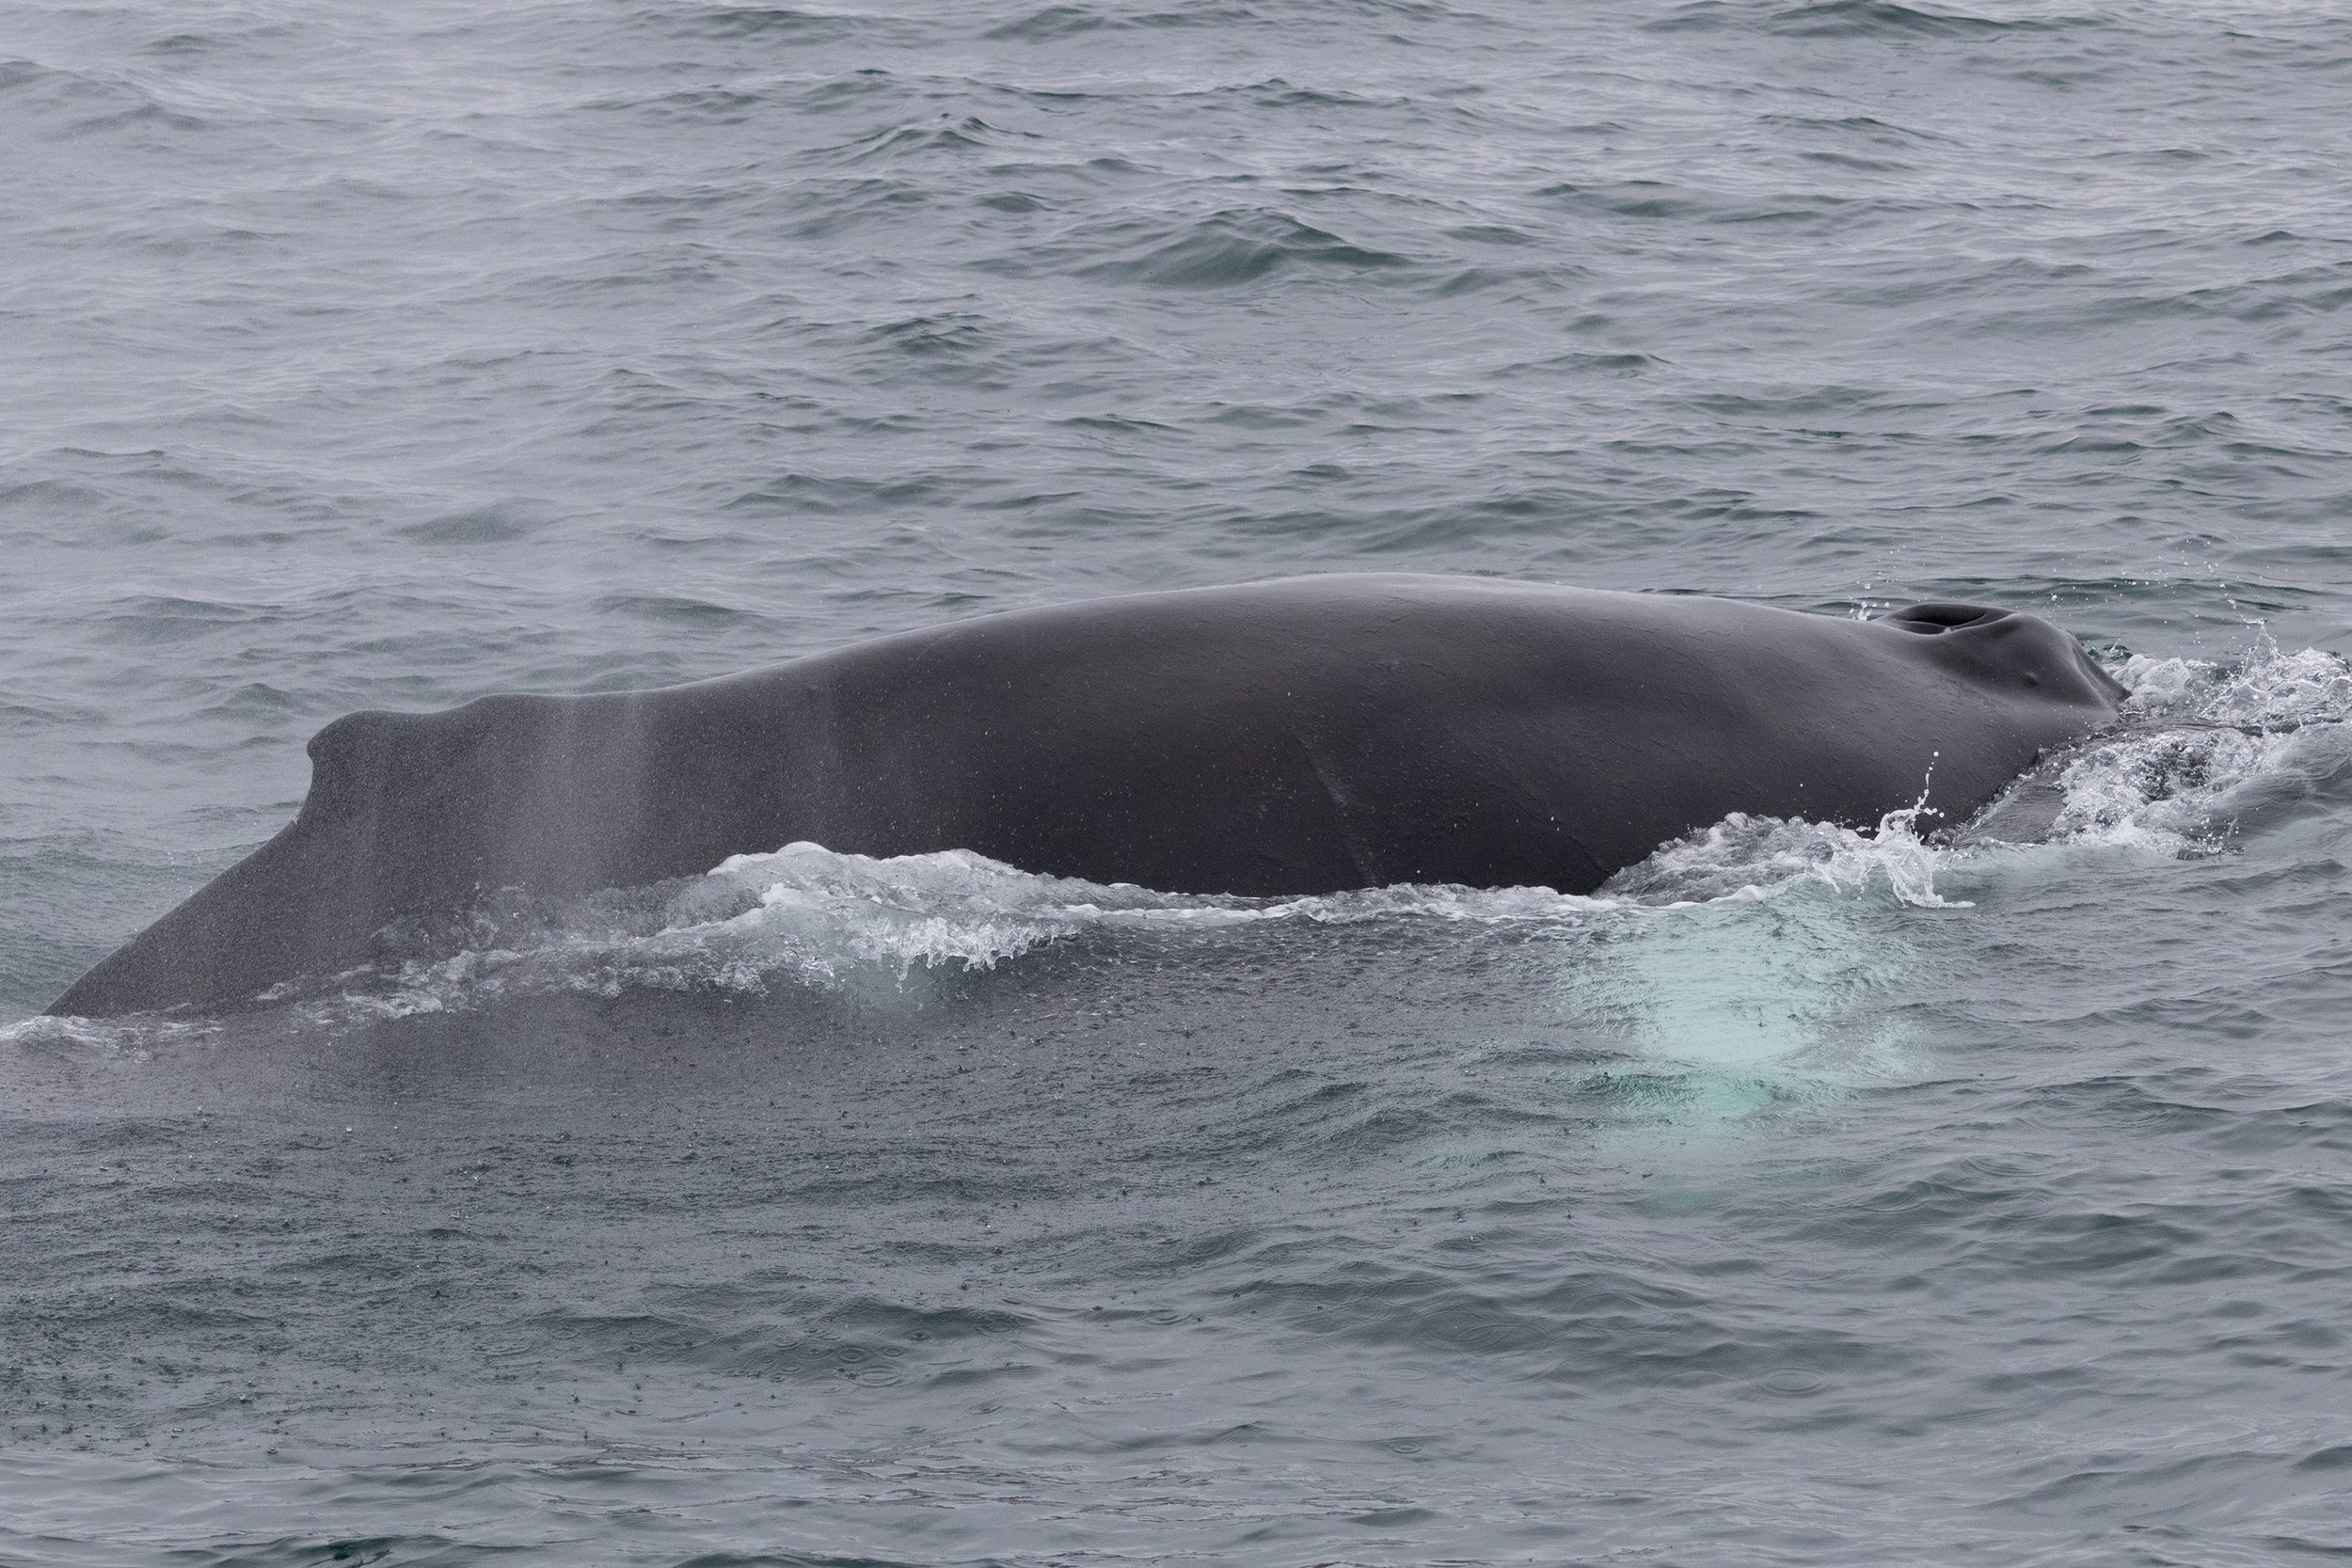  Humpback whale taking a breath. ©David Pérez recio 